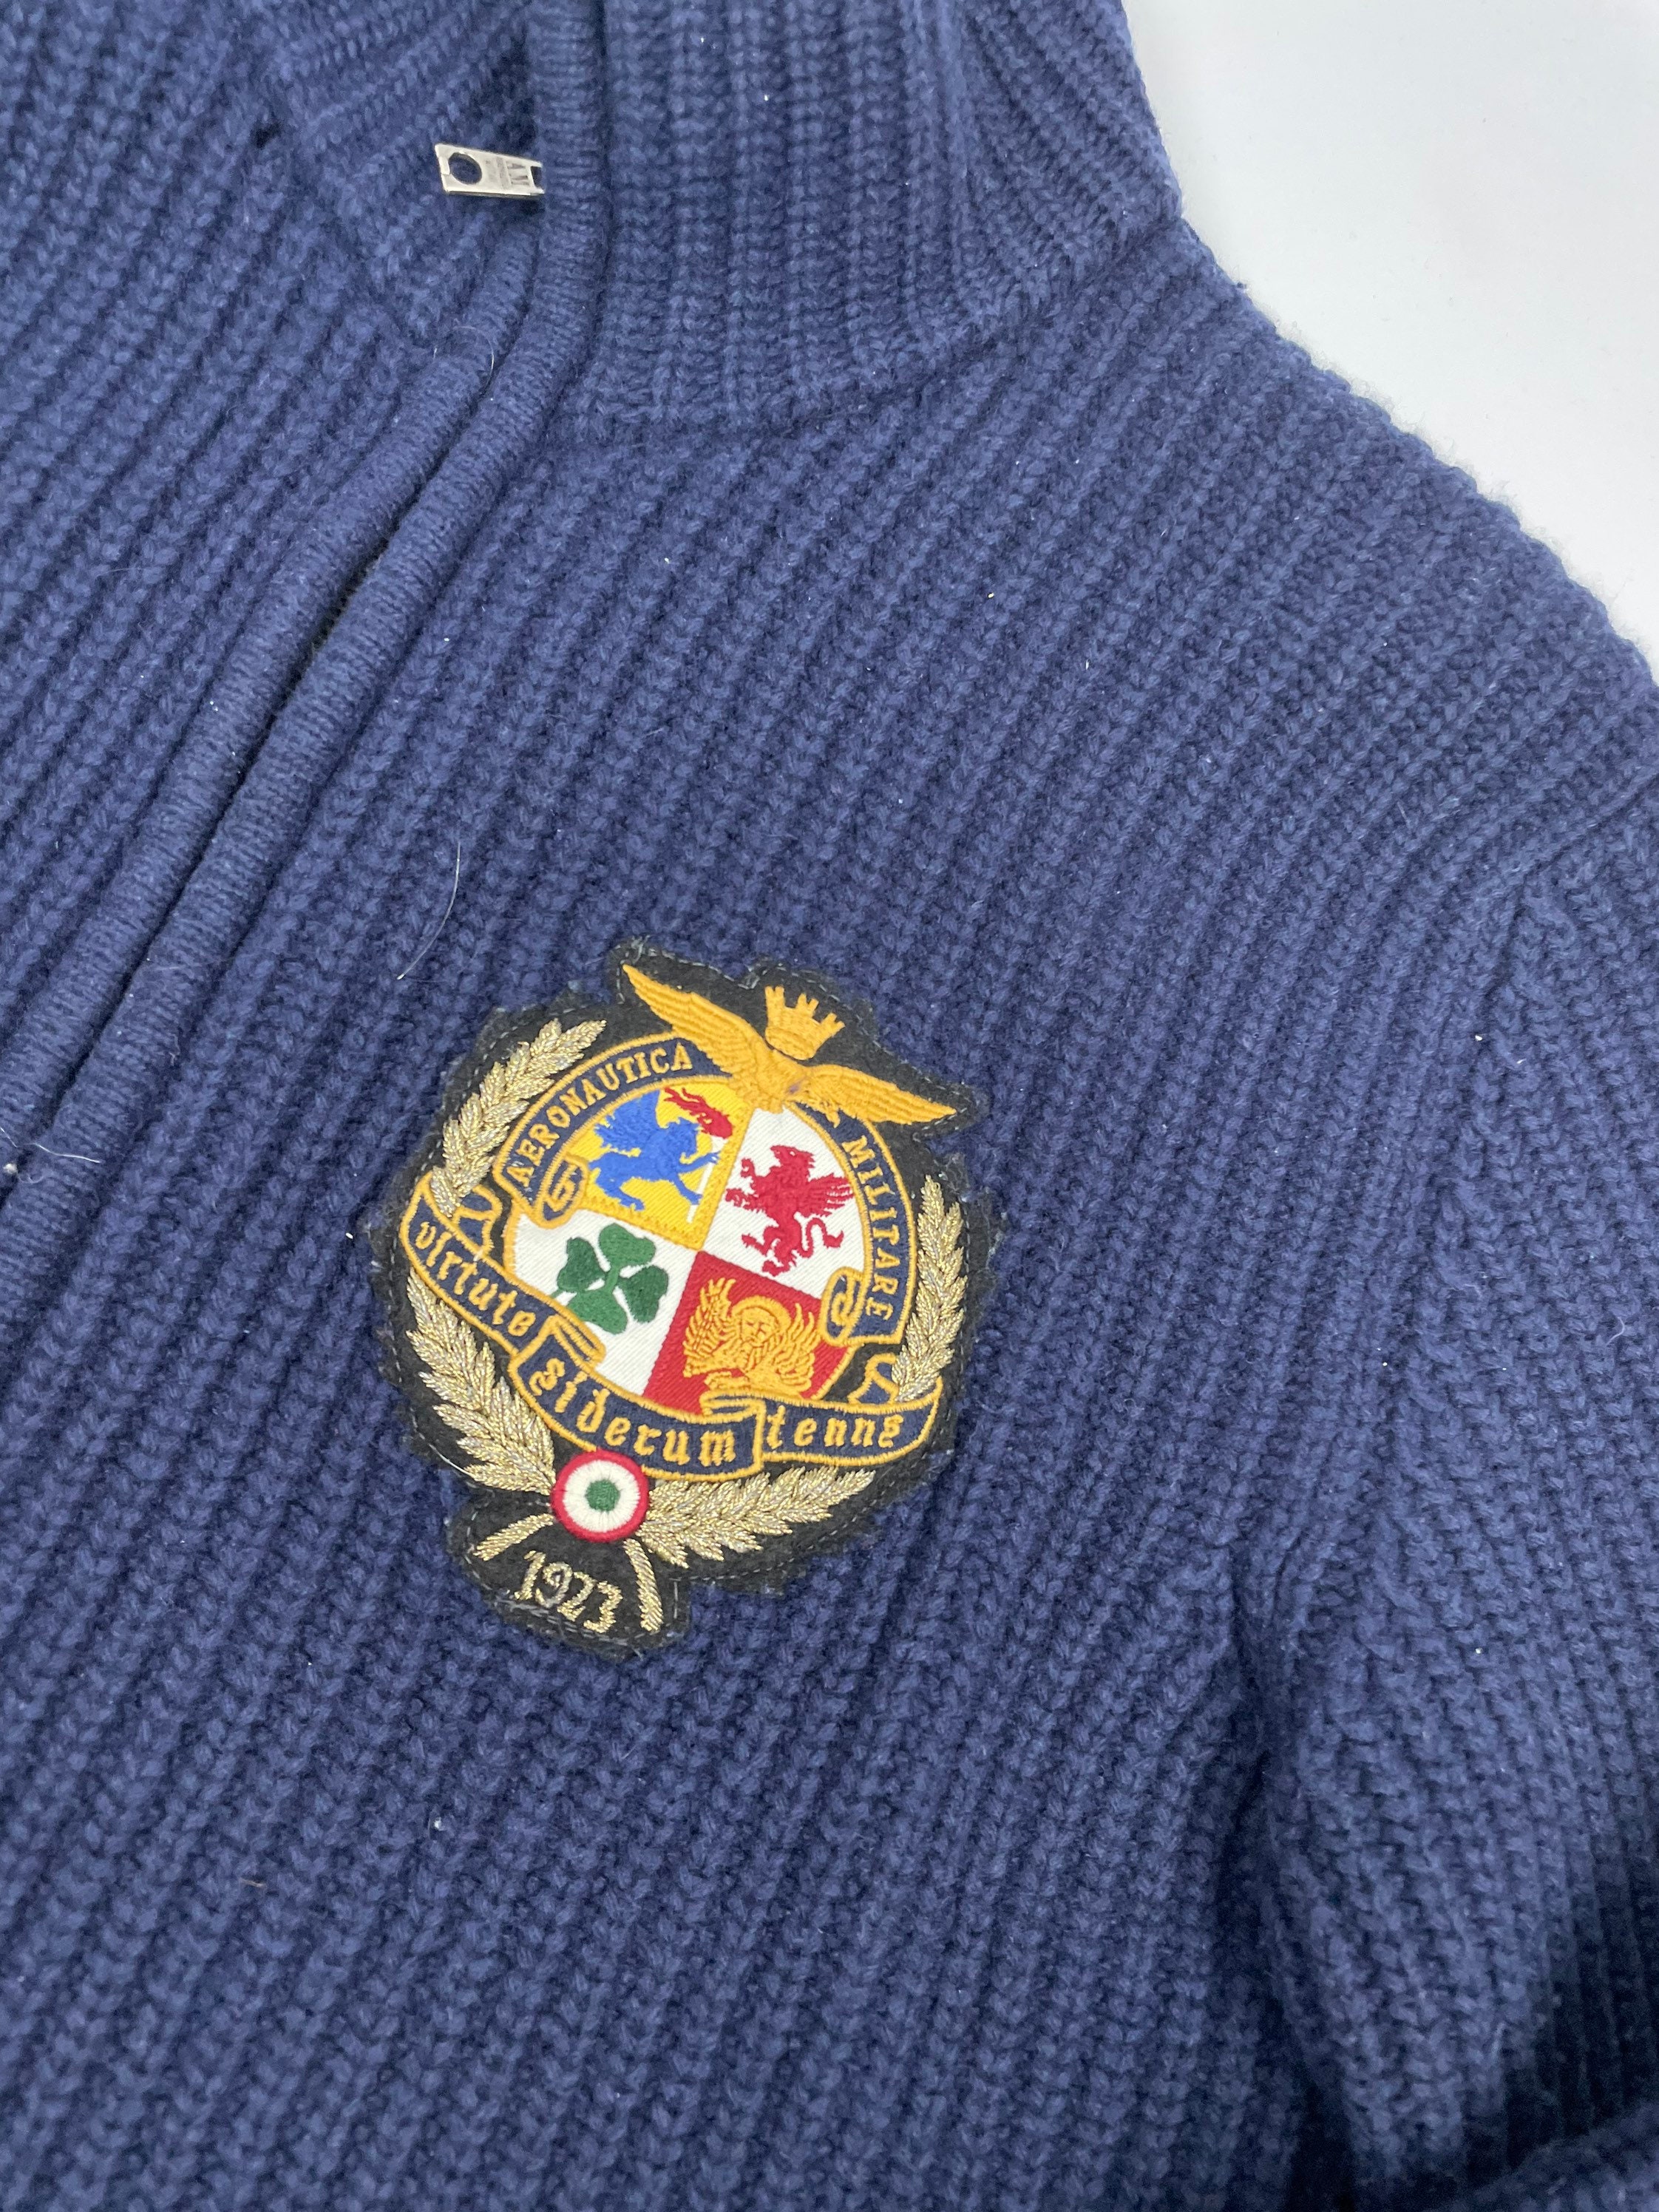 Kleding Herenkleding Hoodies & Sweatshirts Sweatshirts Aeronautica Militare vintage logo 